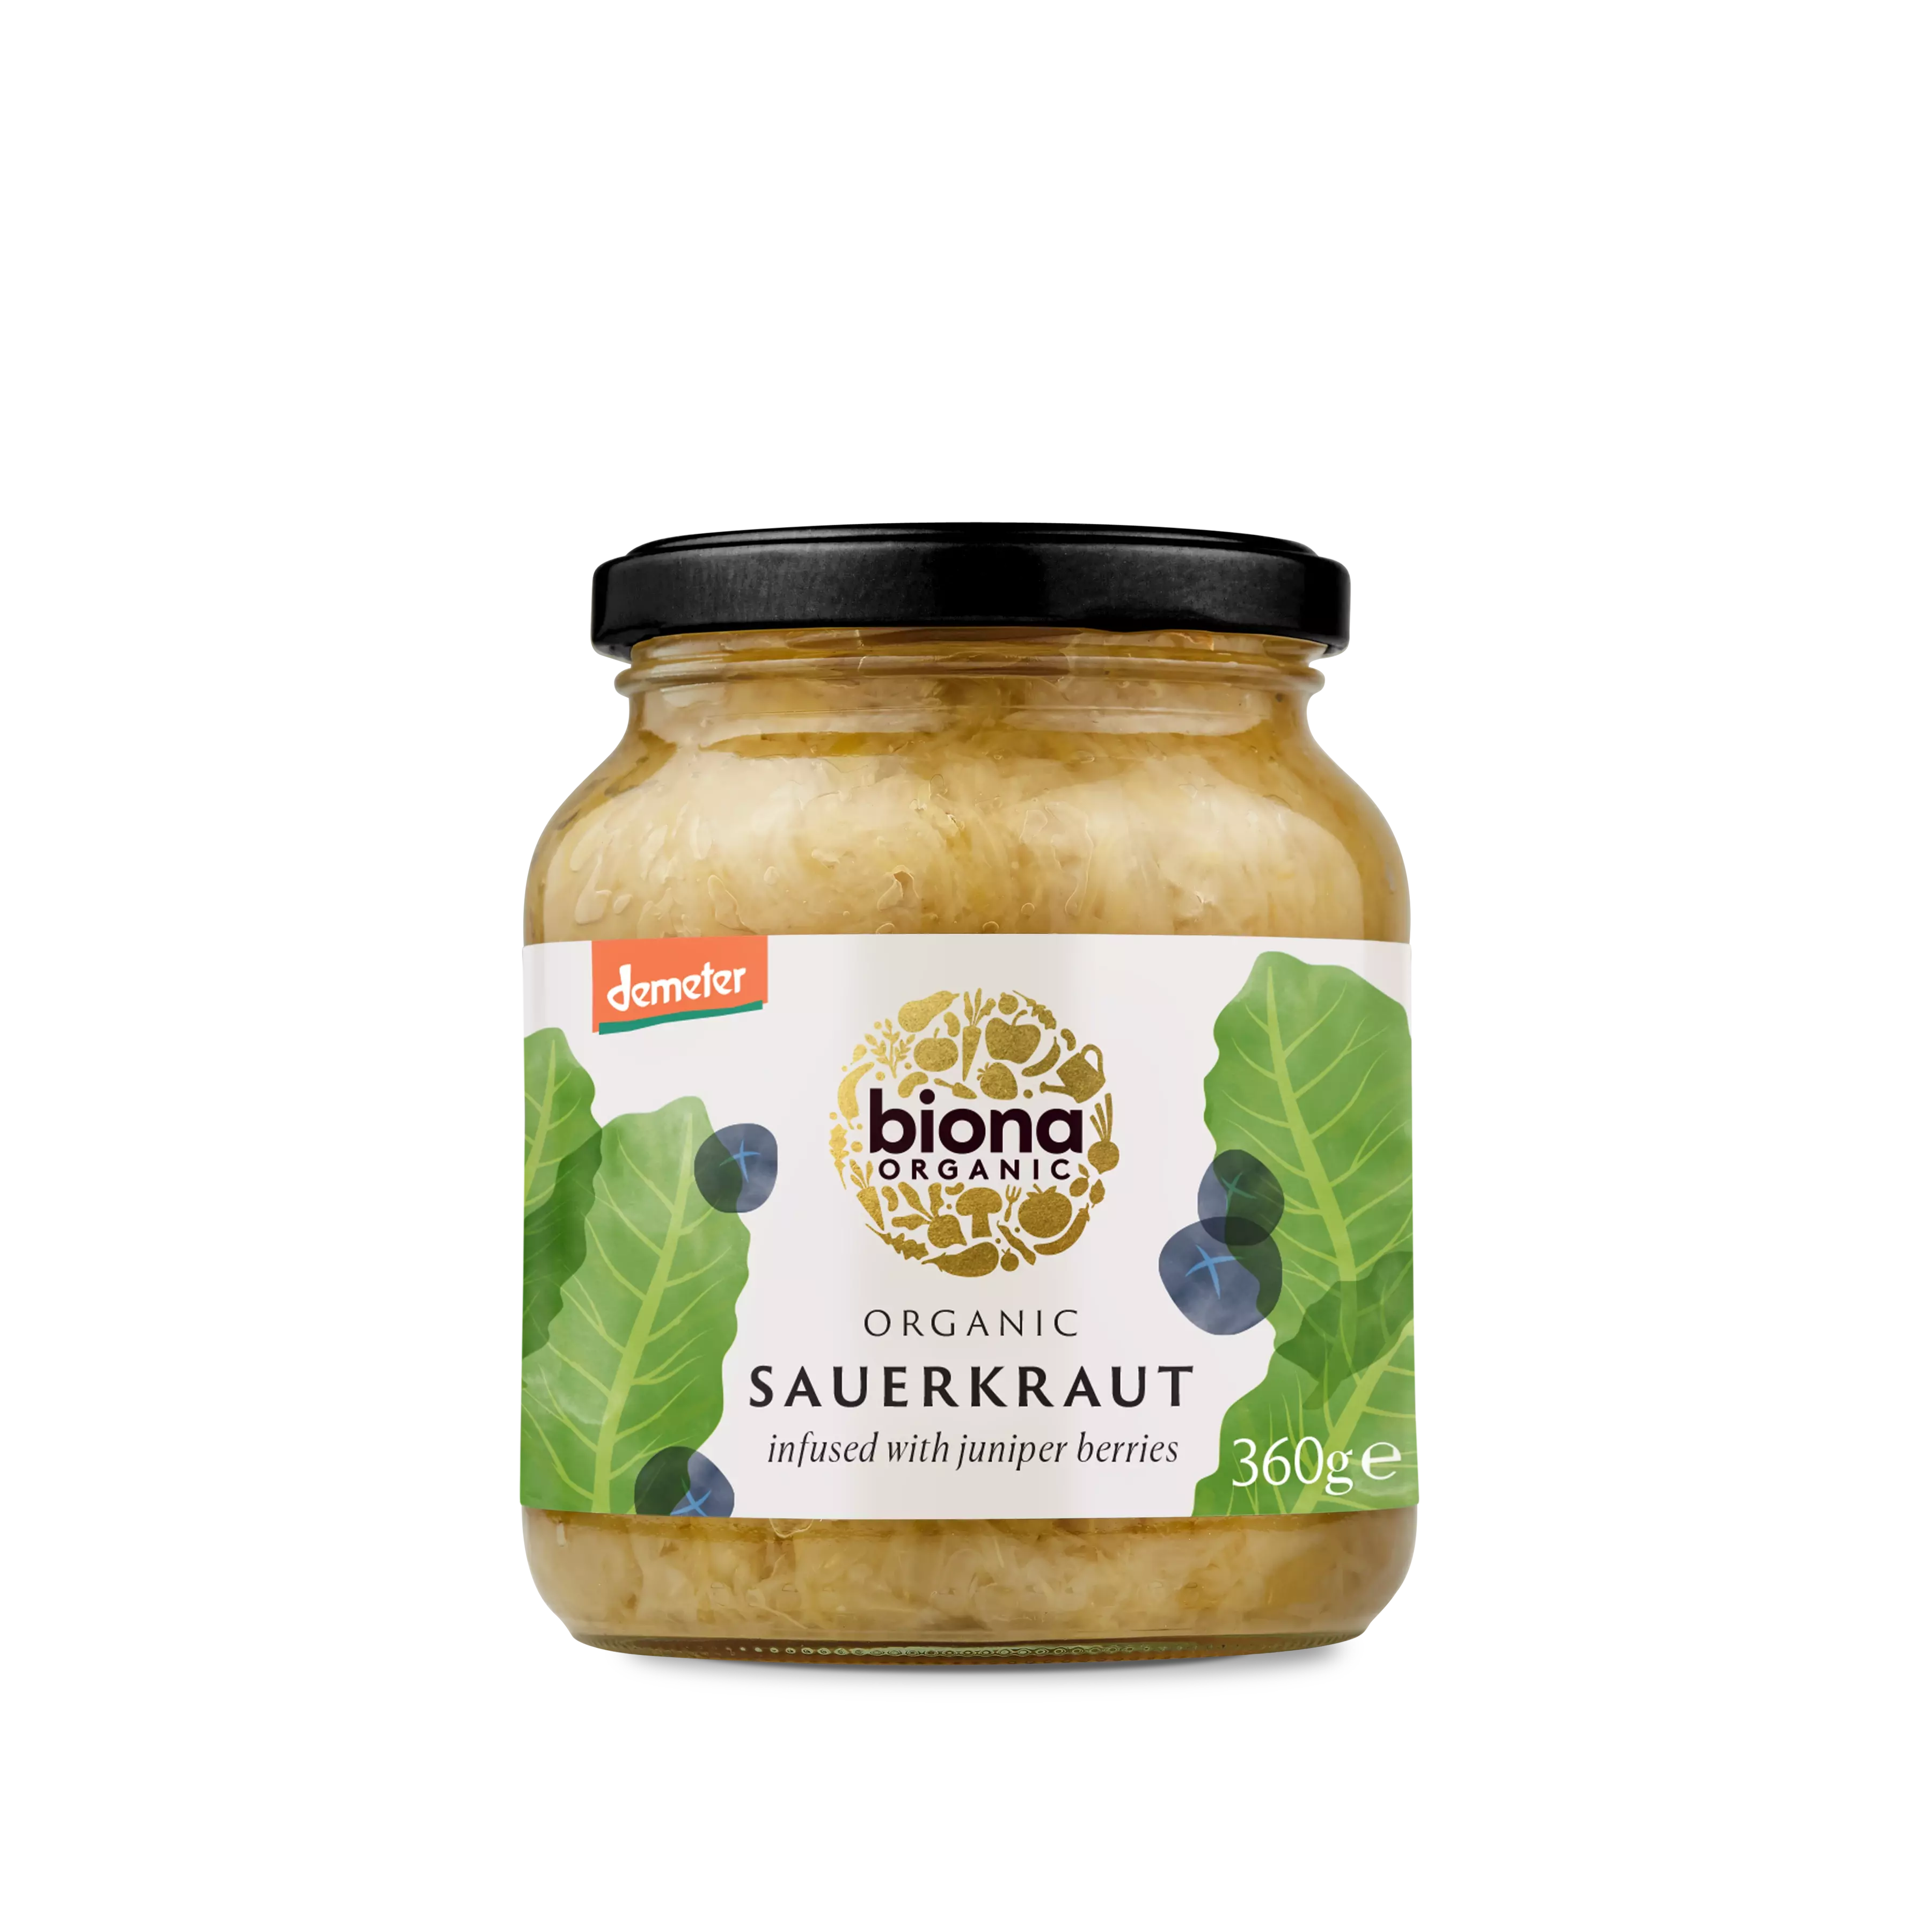 Biona Sauerkraut Organic - Demeter 360g